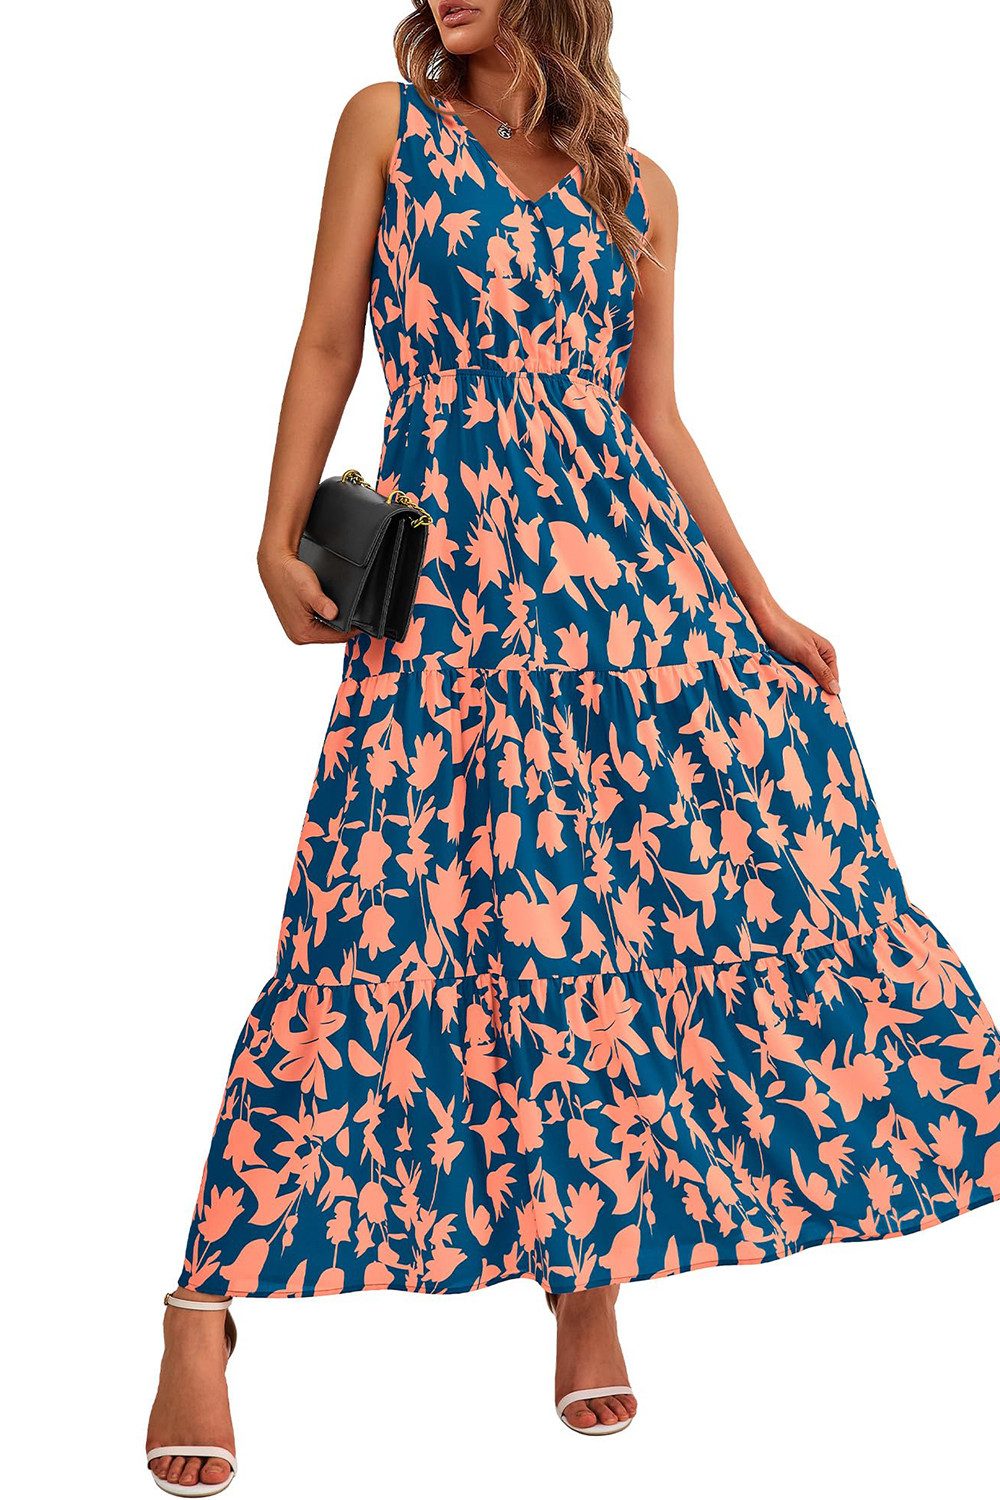 B.X Maxikleid Damen Lässiges bedrucktes, ärmelloses Sommerkleid,A-Linien-Kleid Partykleid,Süßes langes Kleid mit Blumenmuster für Hochzeitsgäste